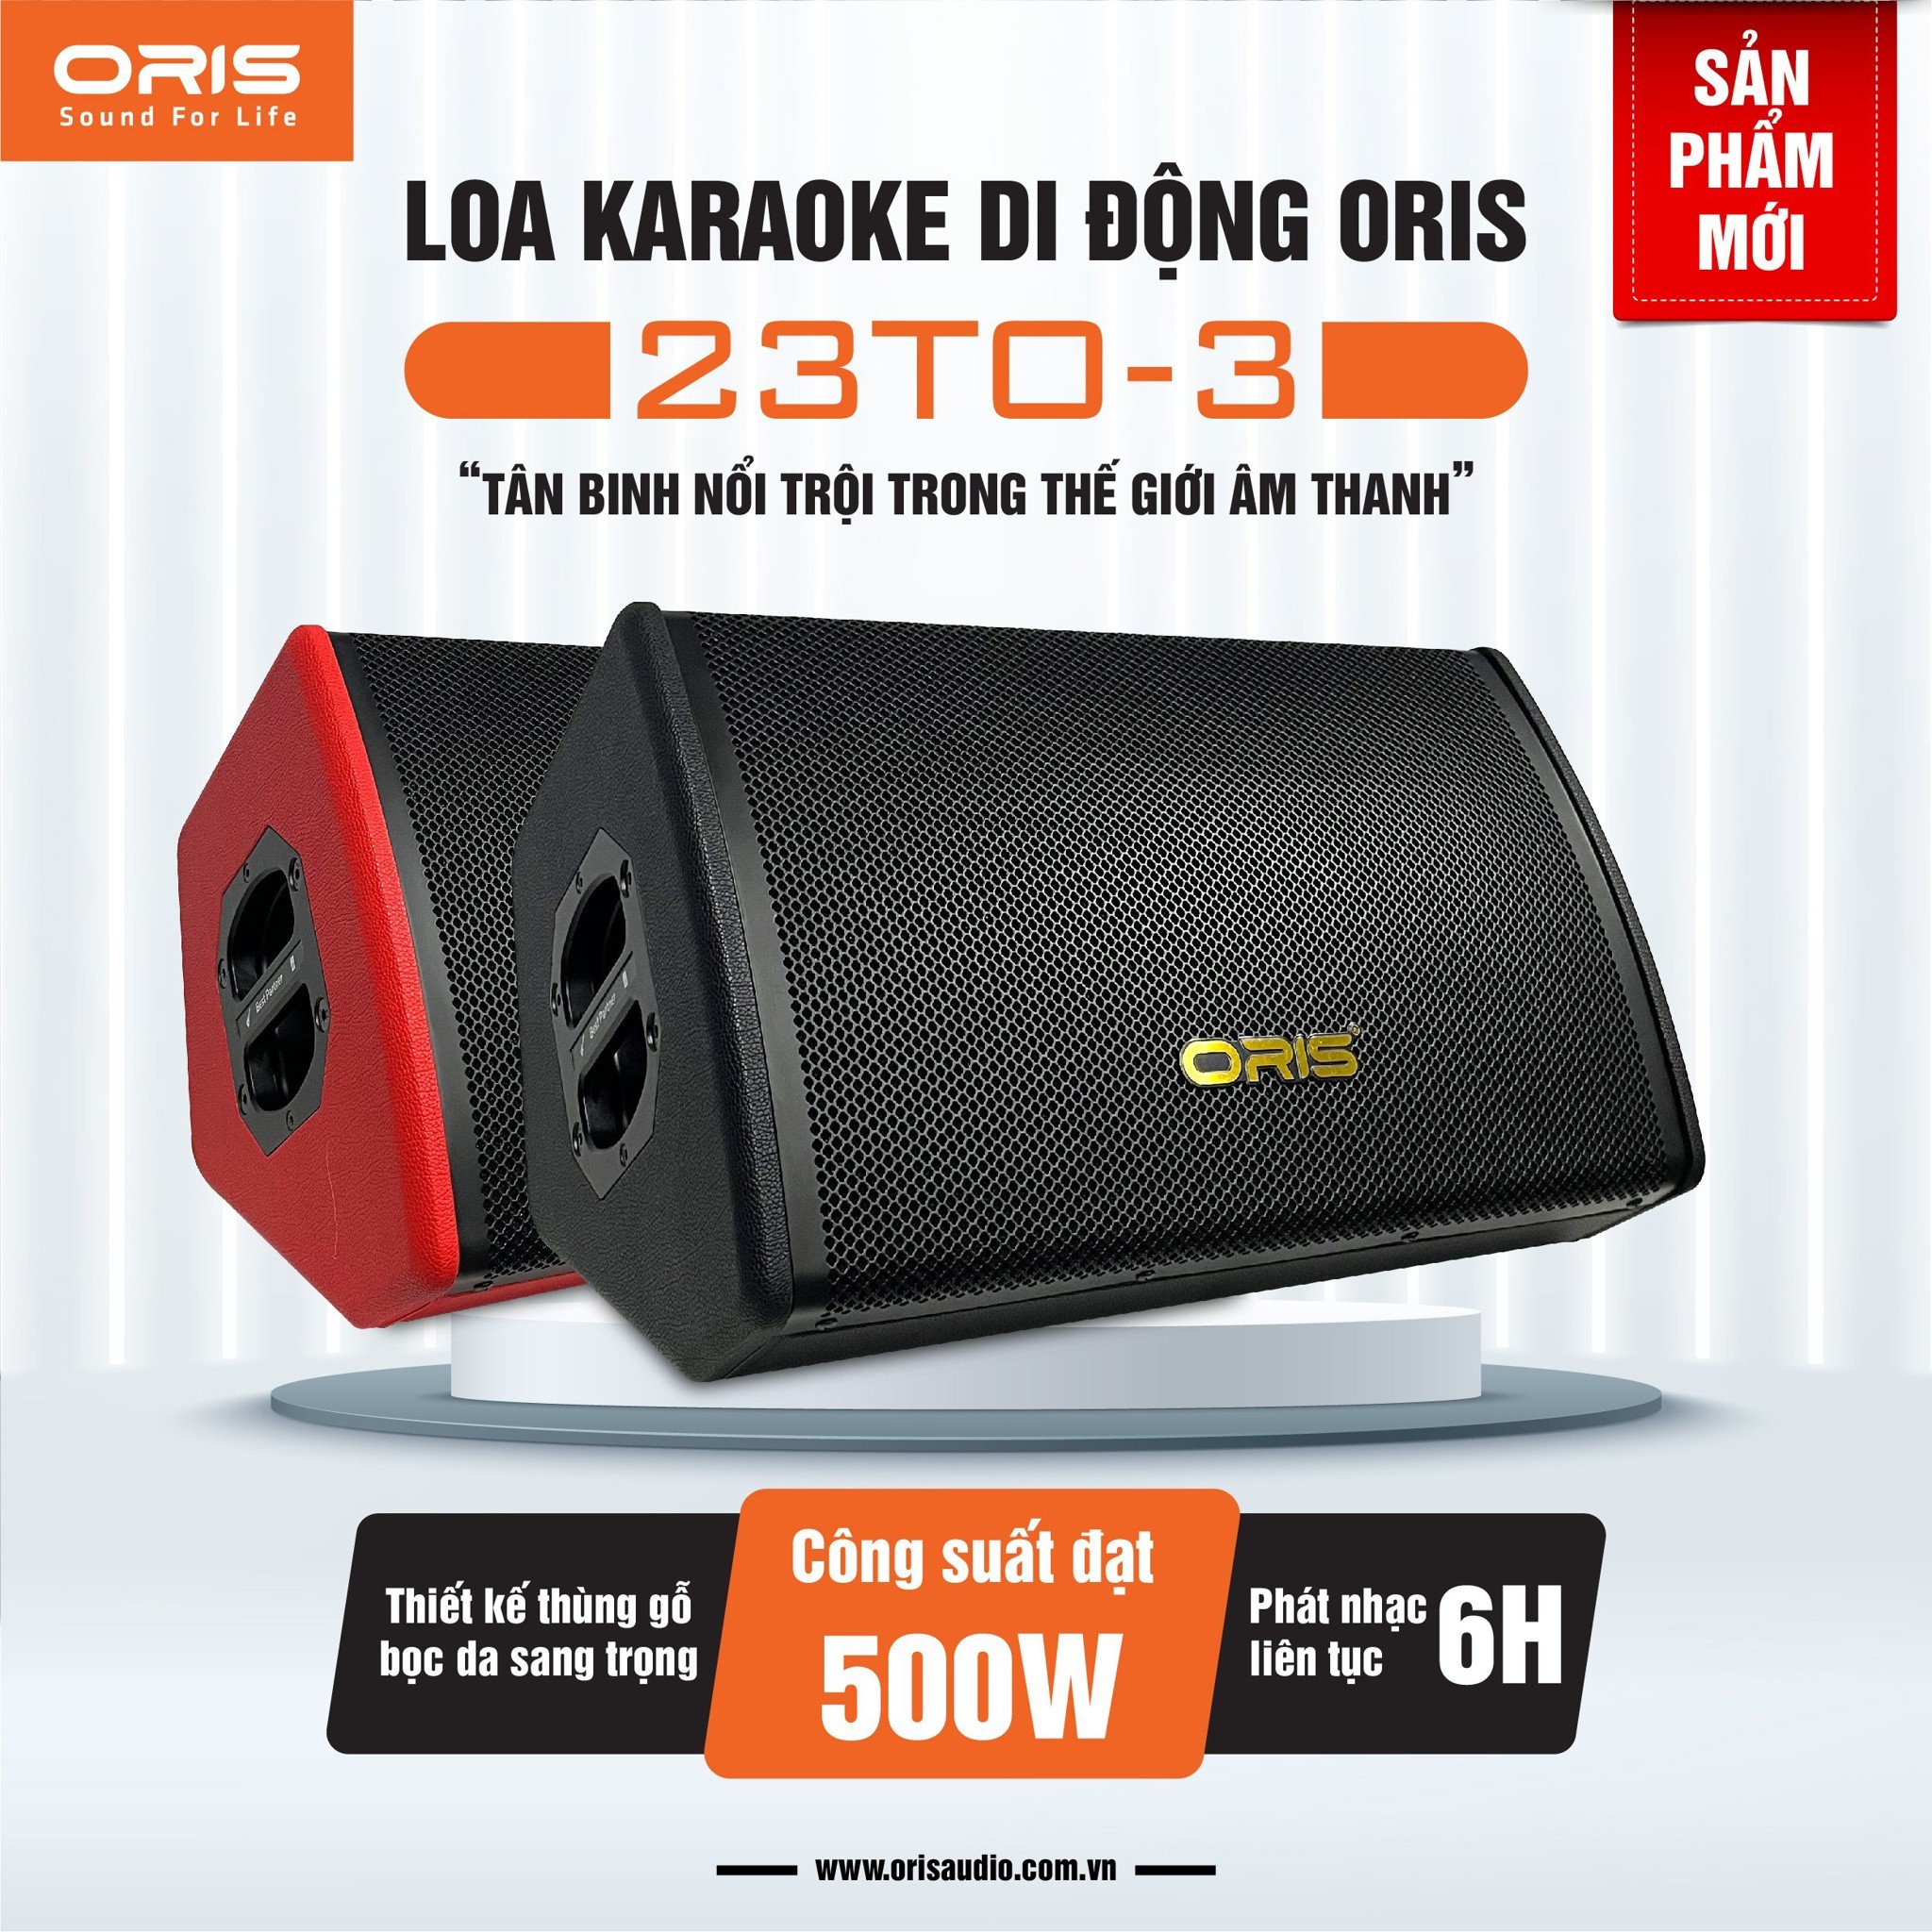 Loa Karaoke Di Động Oris 23TO-3: Khẳng Định Đẳng Cấp Với Chất Lượng Âm Thanh Vượt Trội